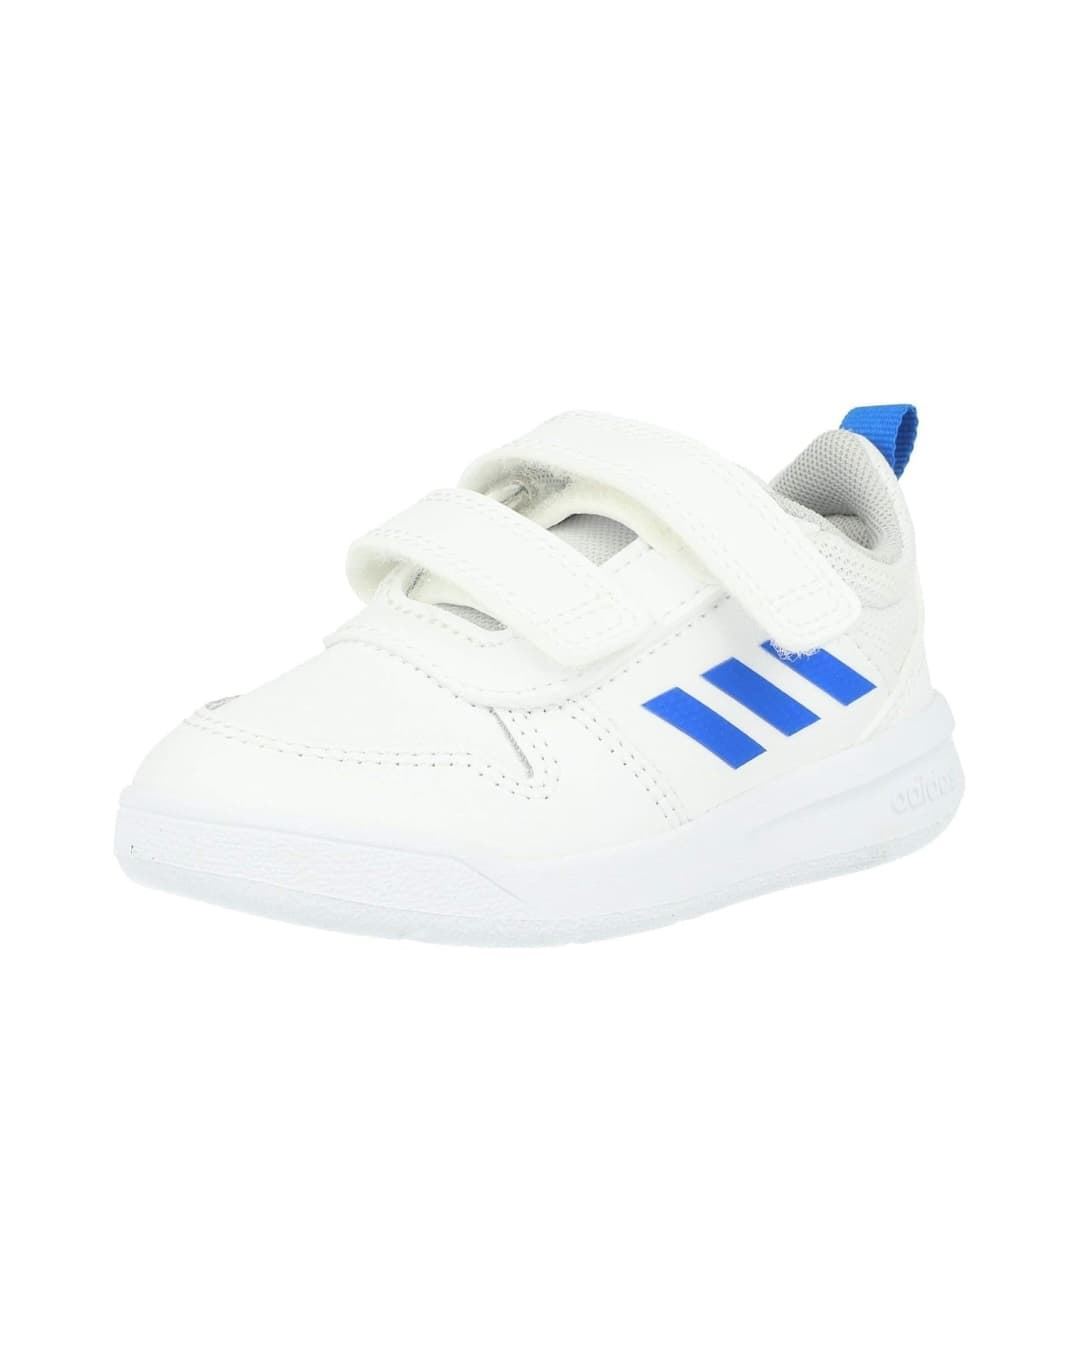 Adidas zapatillas para niños Tensaur I Blanco Azul - Imagen 1